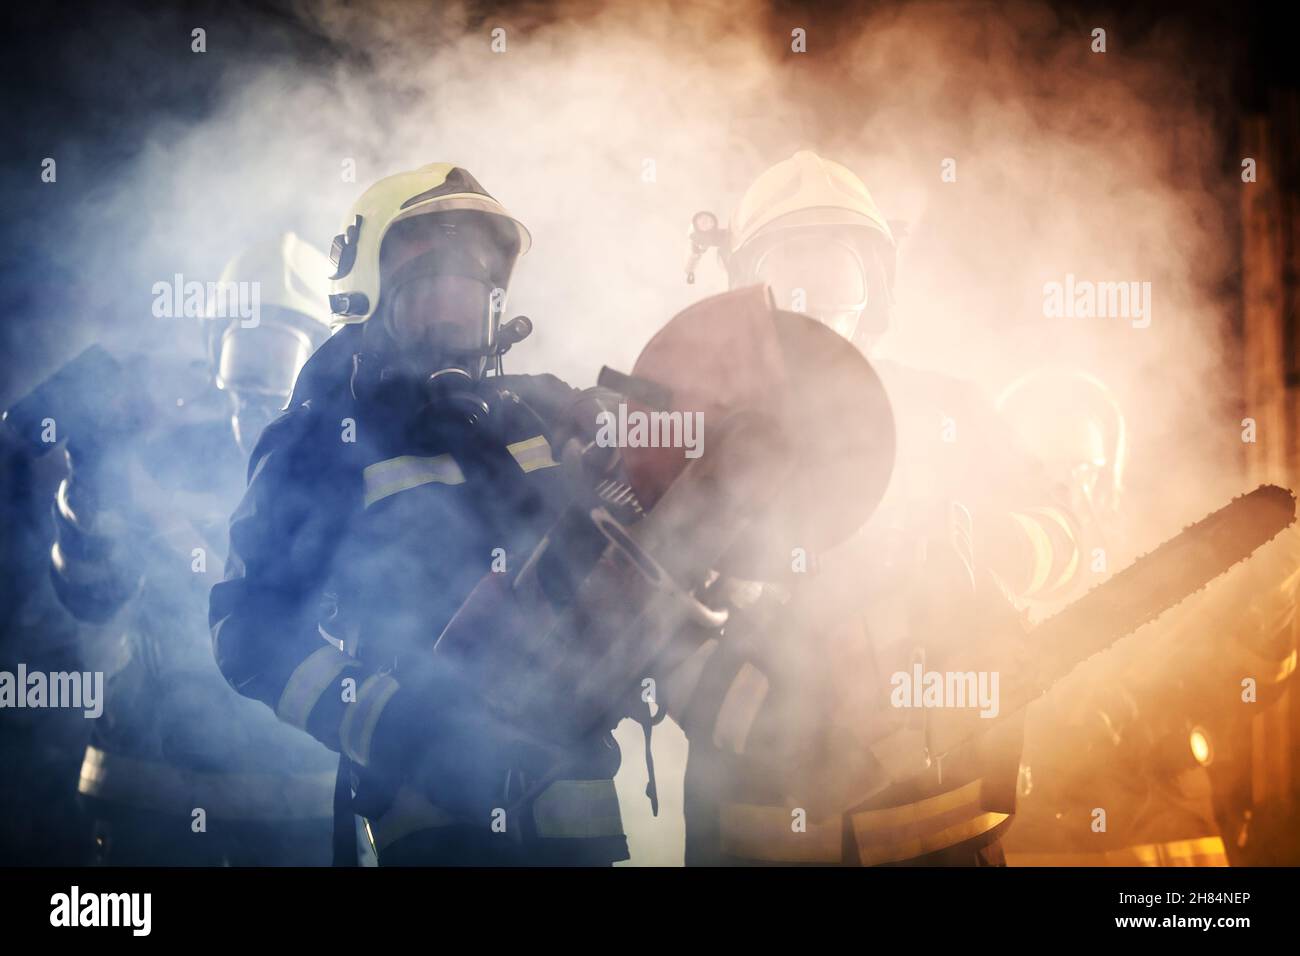 Groupe de pompiers professionnels portant tout l'équipement, des masques à oxygène et des outils de secours d'urgence, une scie circulaire hydraulique et à gaz, une hache et un traîneau Banque D'Images